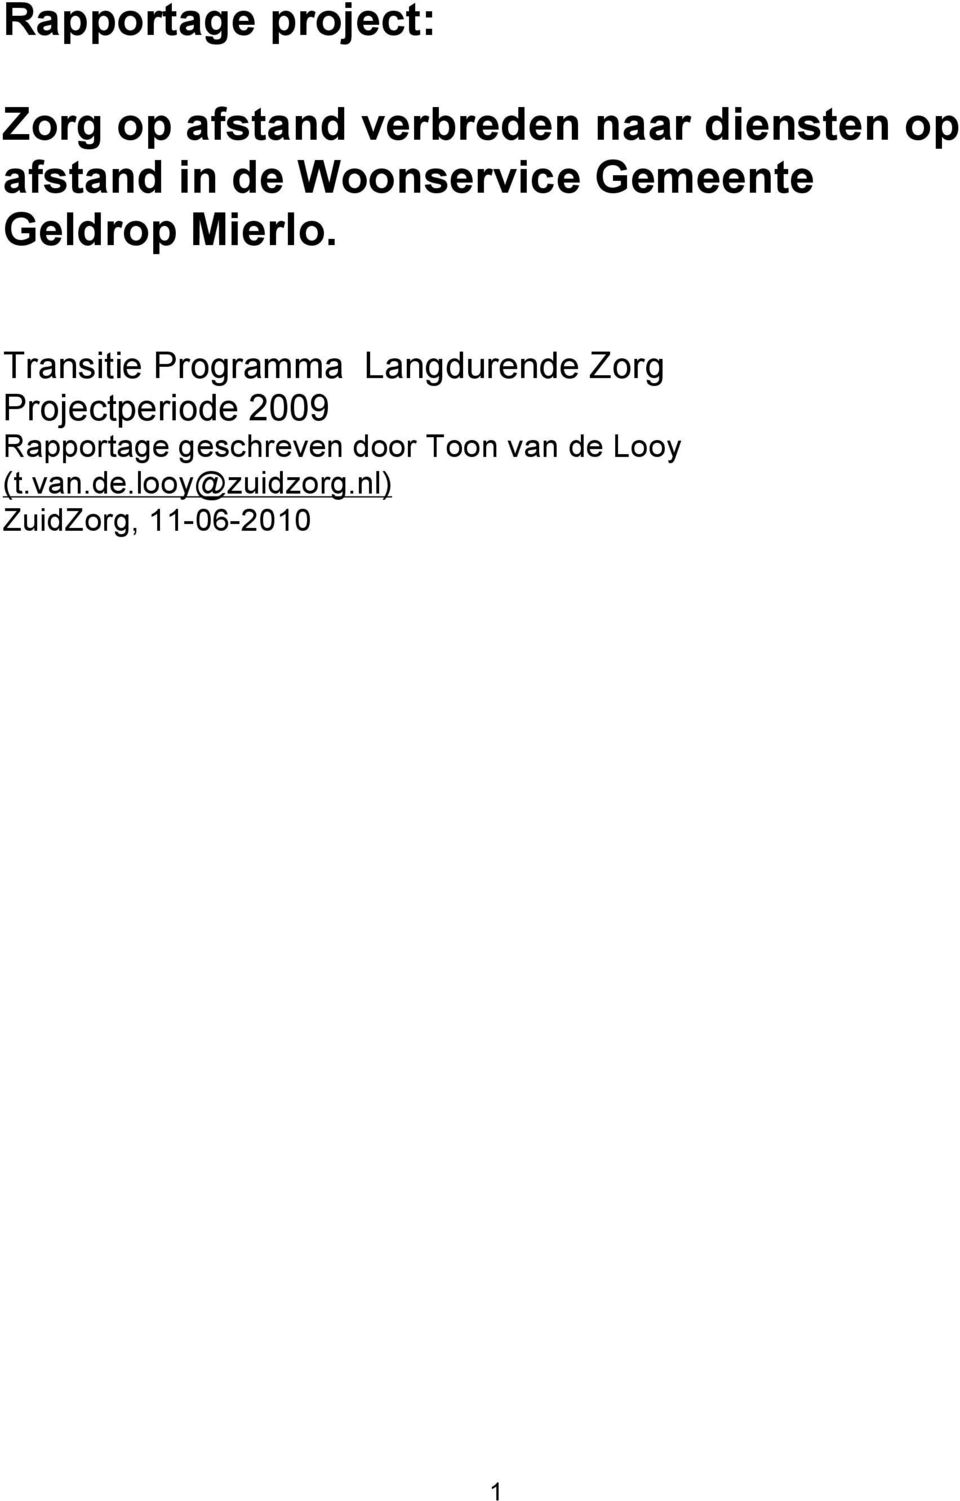 Transitie Programma Langdurende Zorg Projectperiode 2009